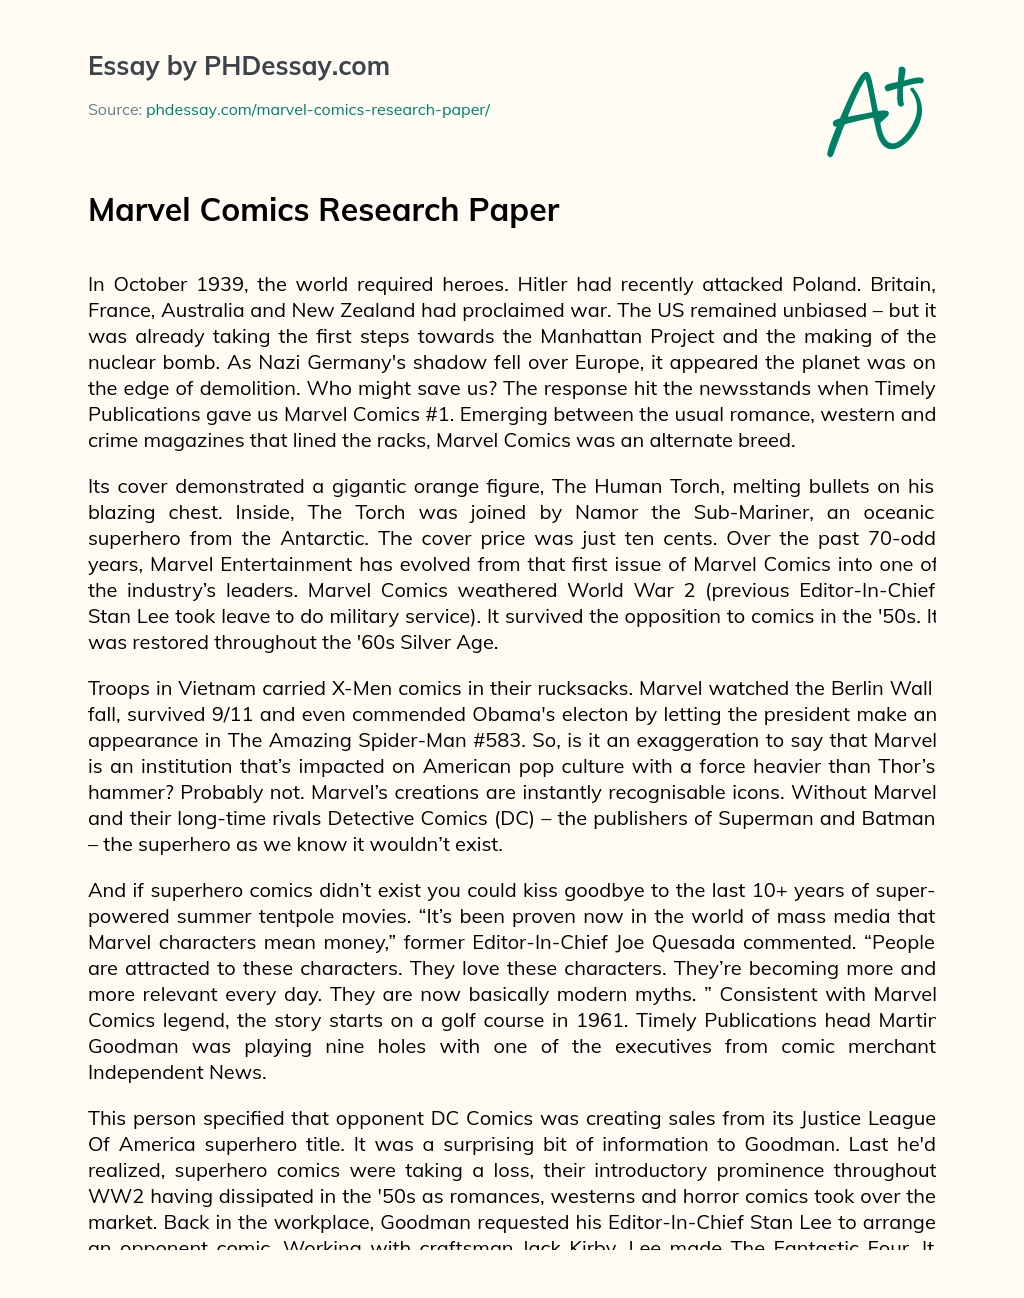 Marvel Comics Research Paper essay